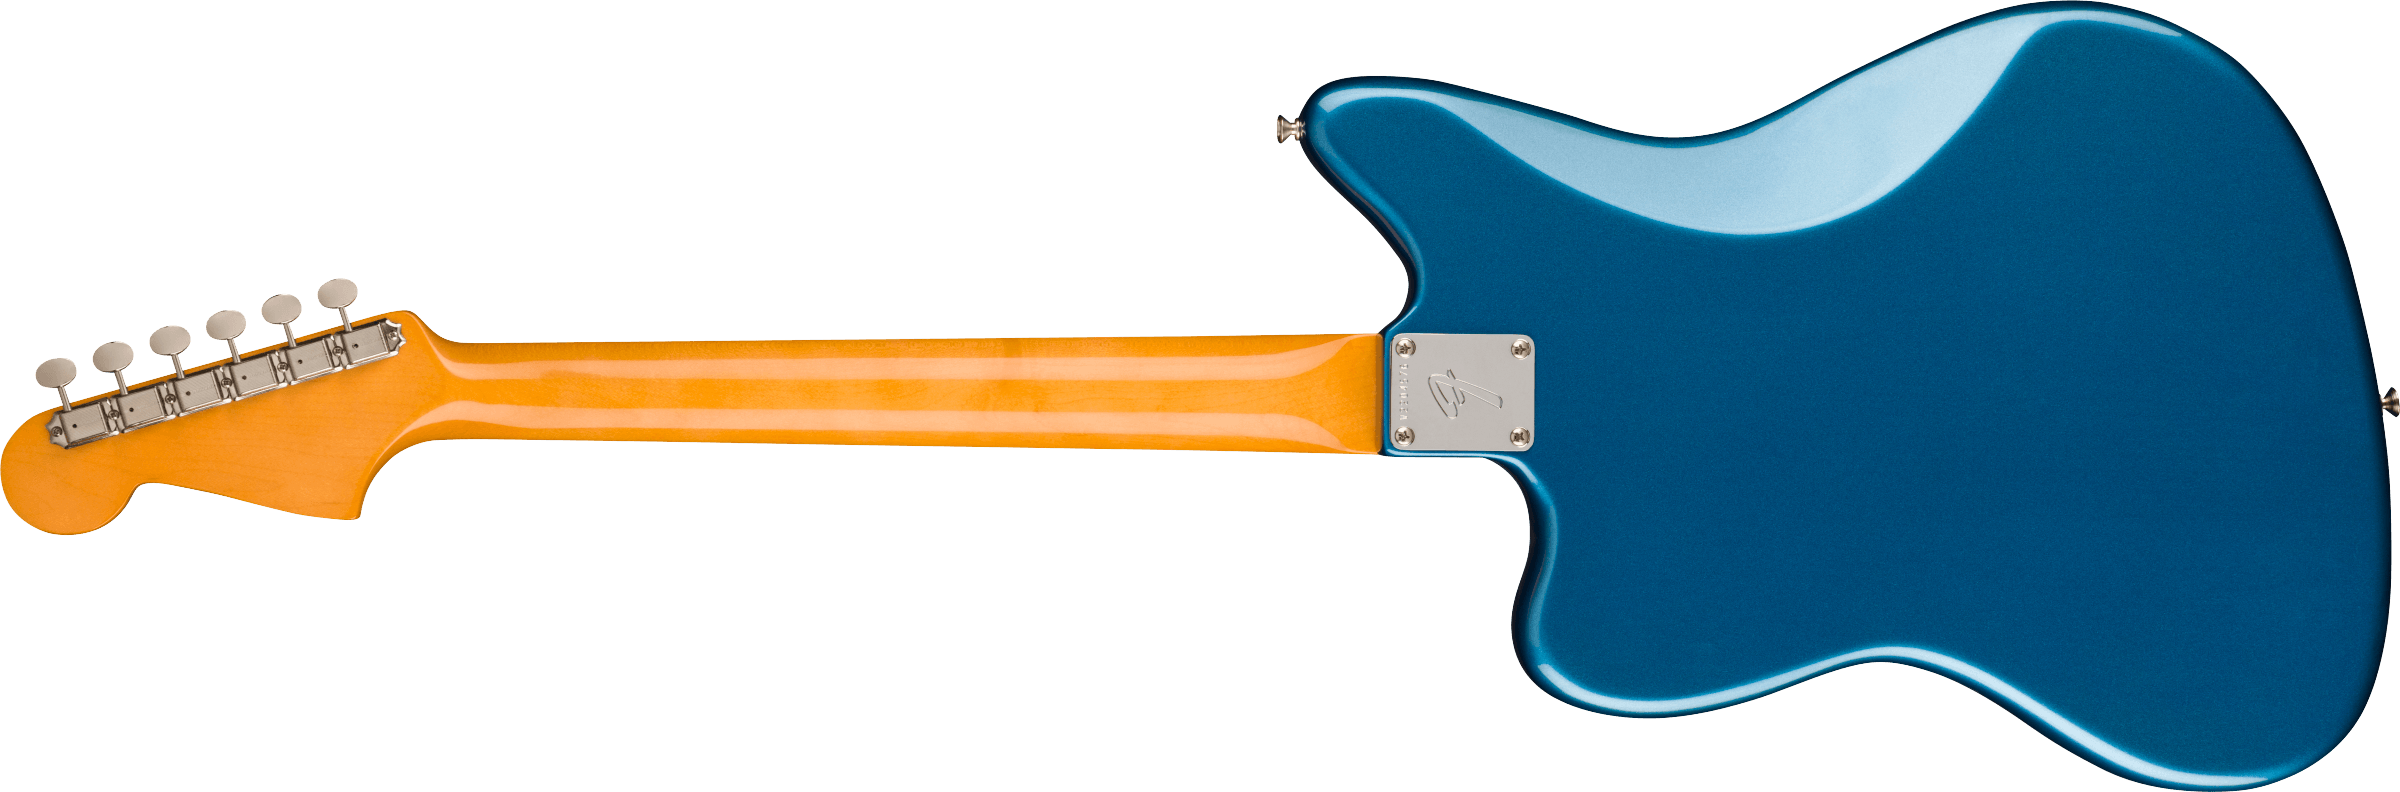 Fender American Vintage II 1966 Jazzmaster Rosewood Fingerboard, Lake Placid Blue 0110340802 SERIAL NUMBER V2208275 - 8.0 LBS